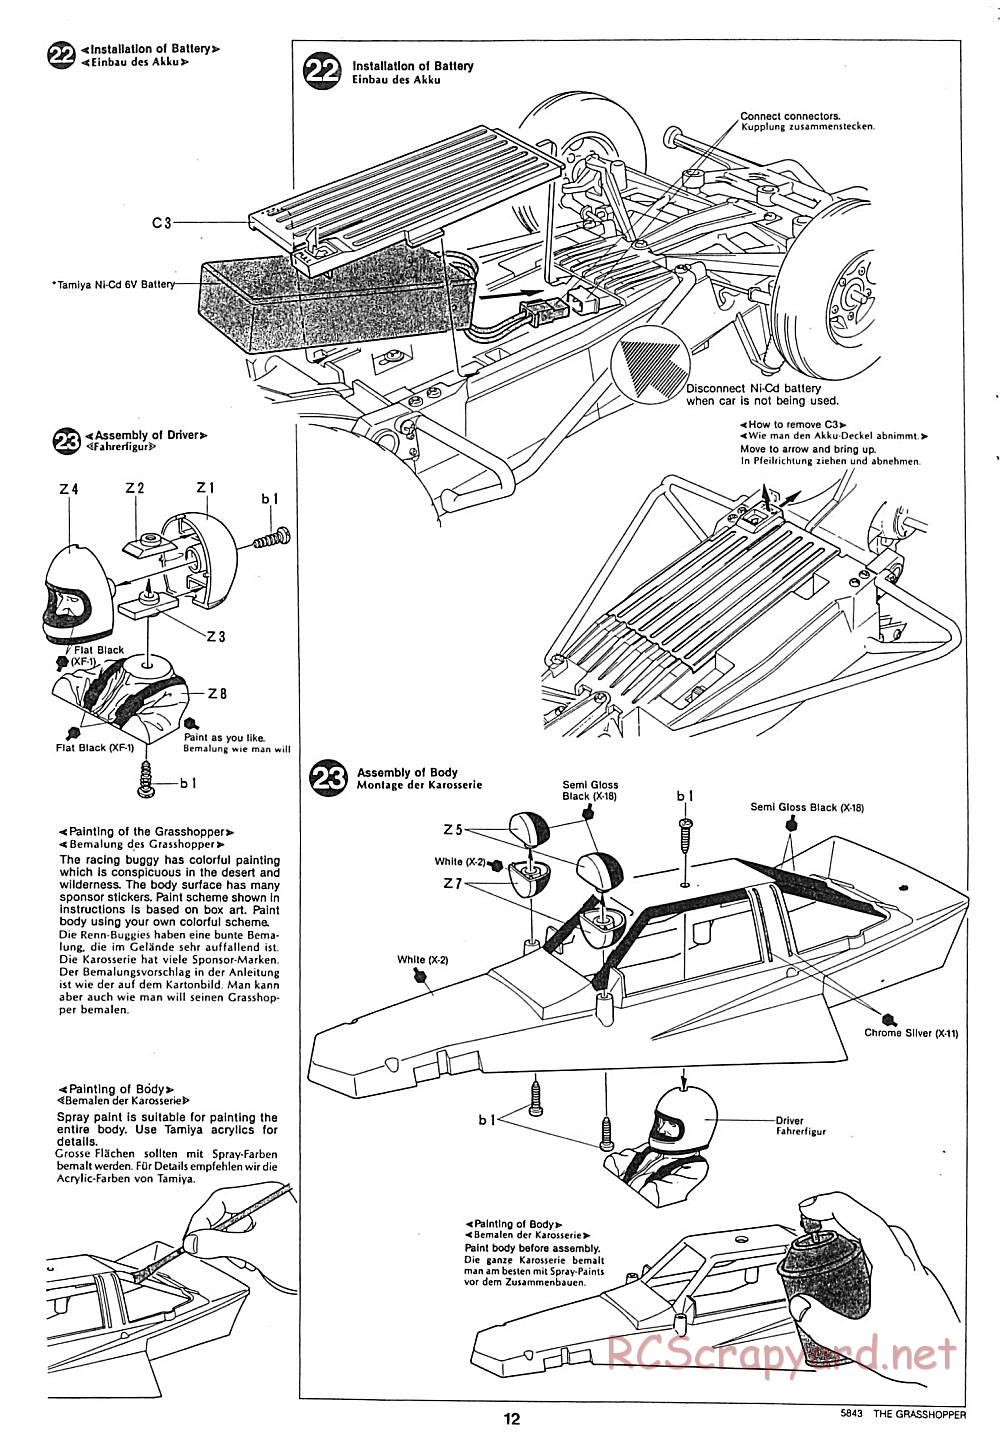 Tamiya - The Grasshopper - 58043 - Manual - Page 12